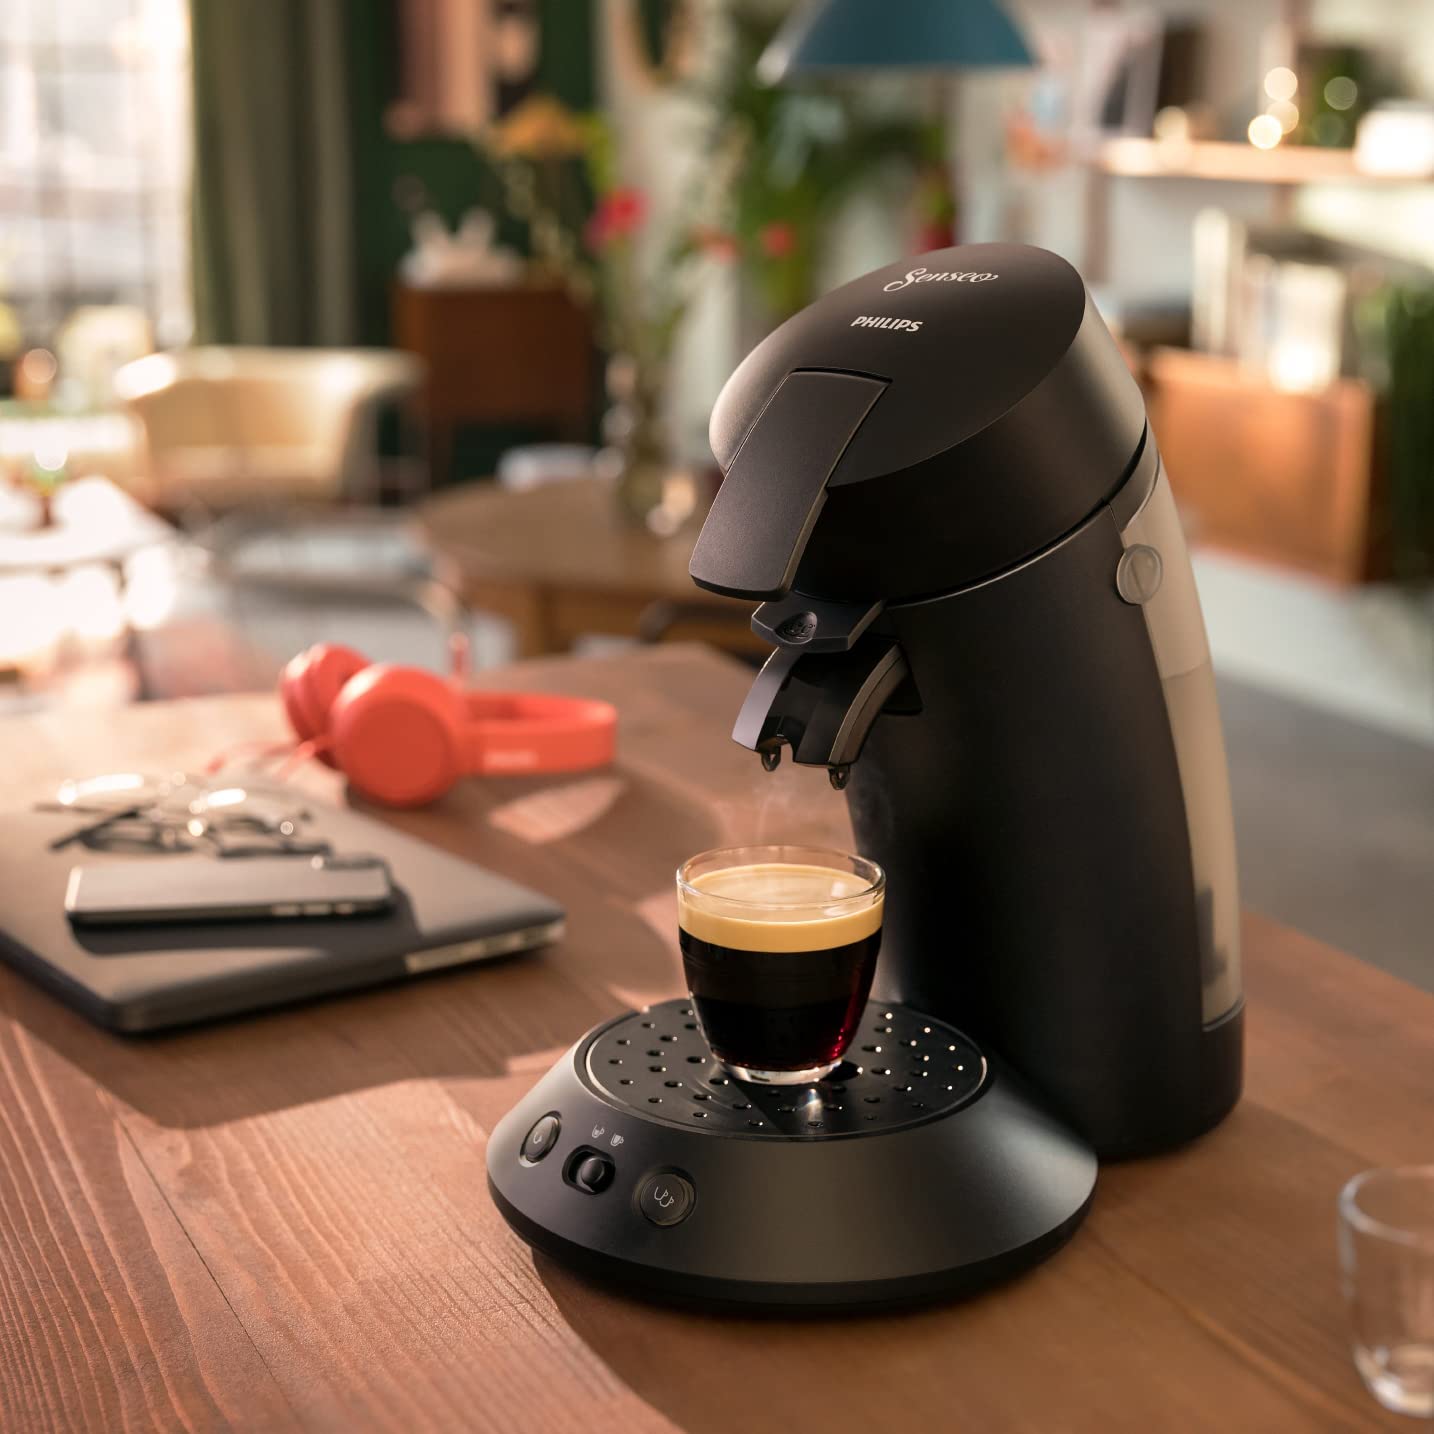 Eine Senseo Original Plus in der Farbe Schwarz steht auf einer hölzernen Küchentheke. Eine frische Tasse Kaffee dampft, im Hintergrund liegen ein Laptop, ein Handy und orange Kopfhörer.